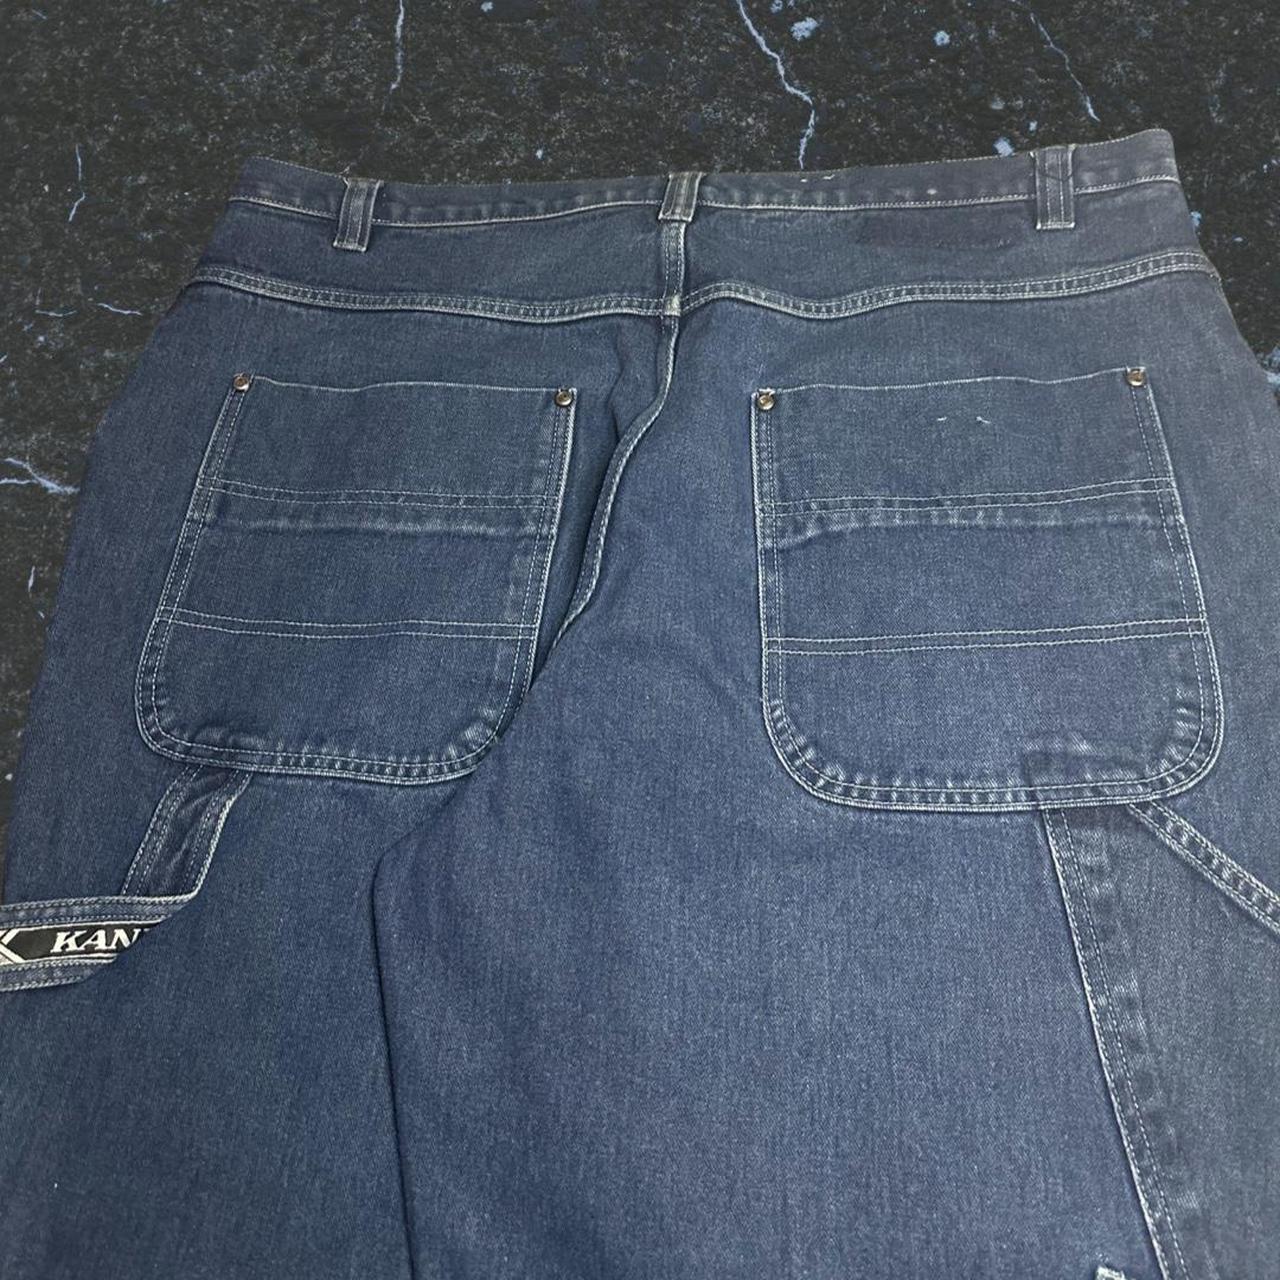 Karl Kani baggy carpenter jeans, size 44x29 (altered... - Depop